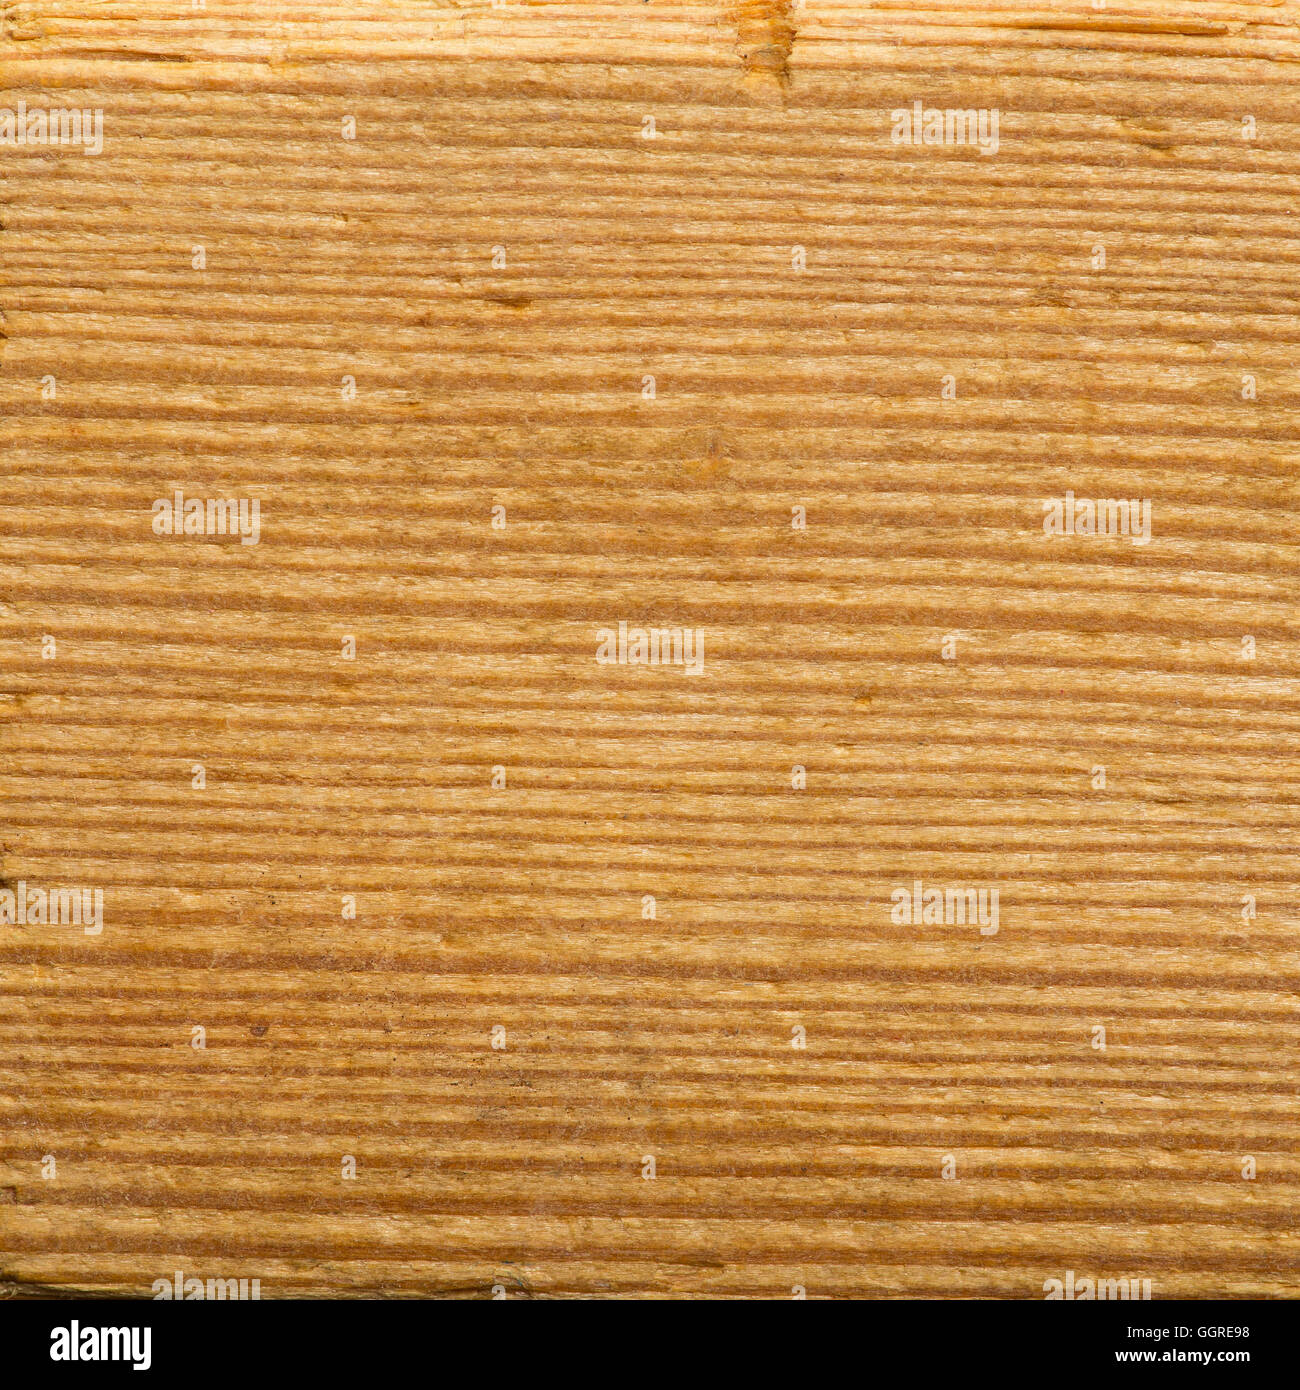 Textura de madera con líneas horizontales. Macro shot. Bajo relieve la textura de la superficie. Foto de stock